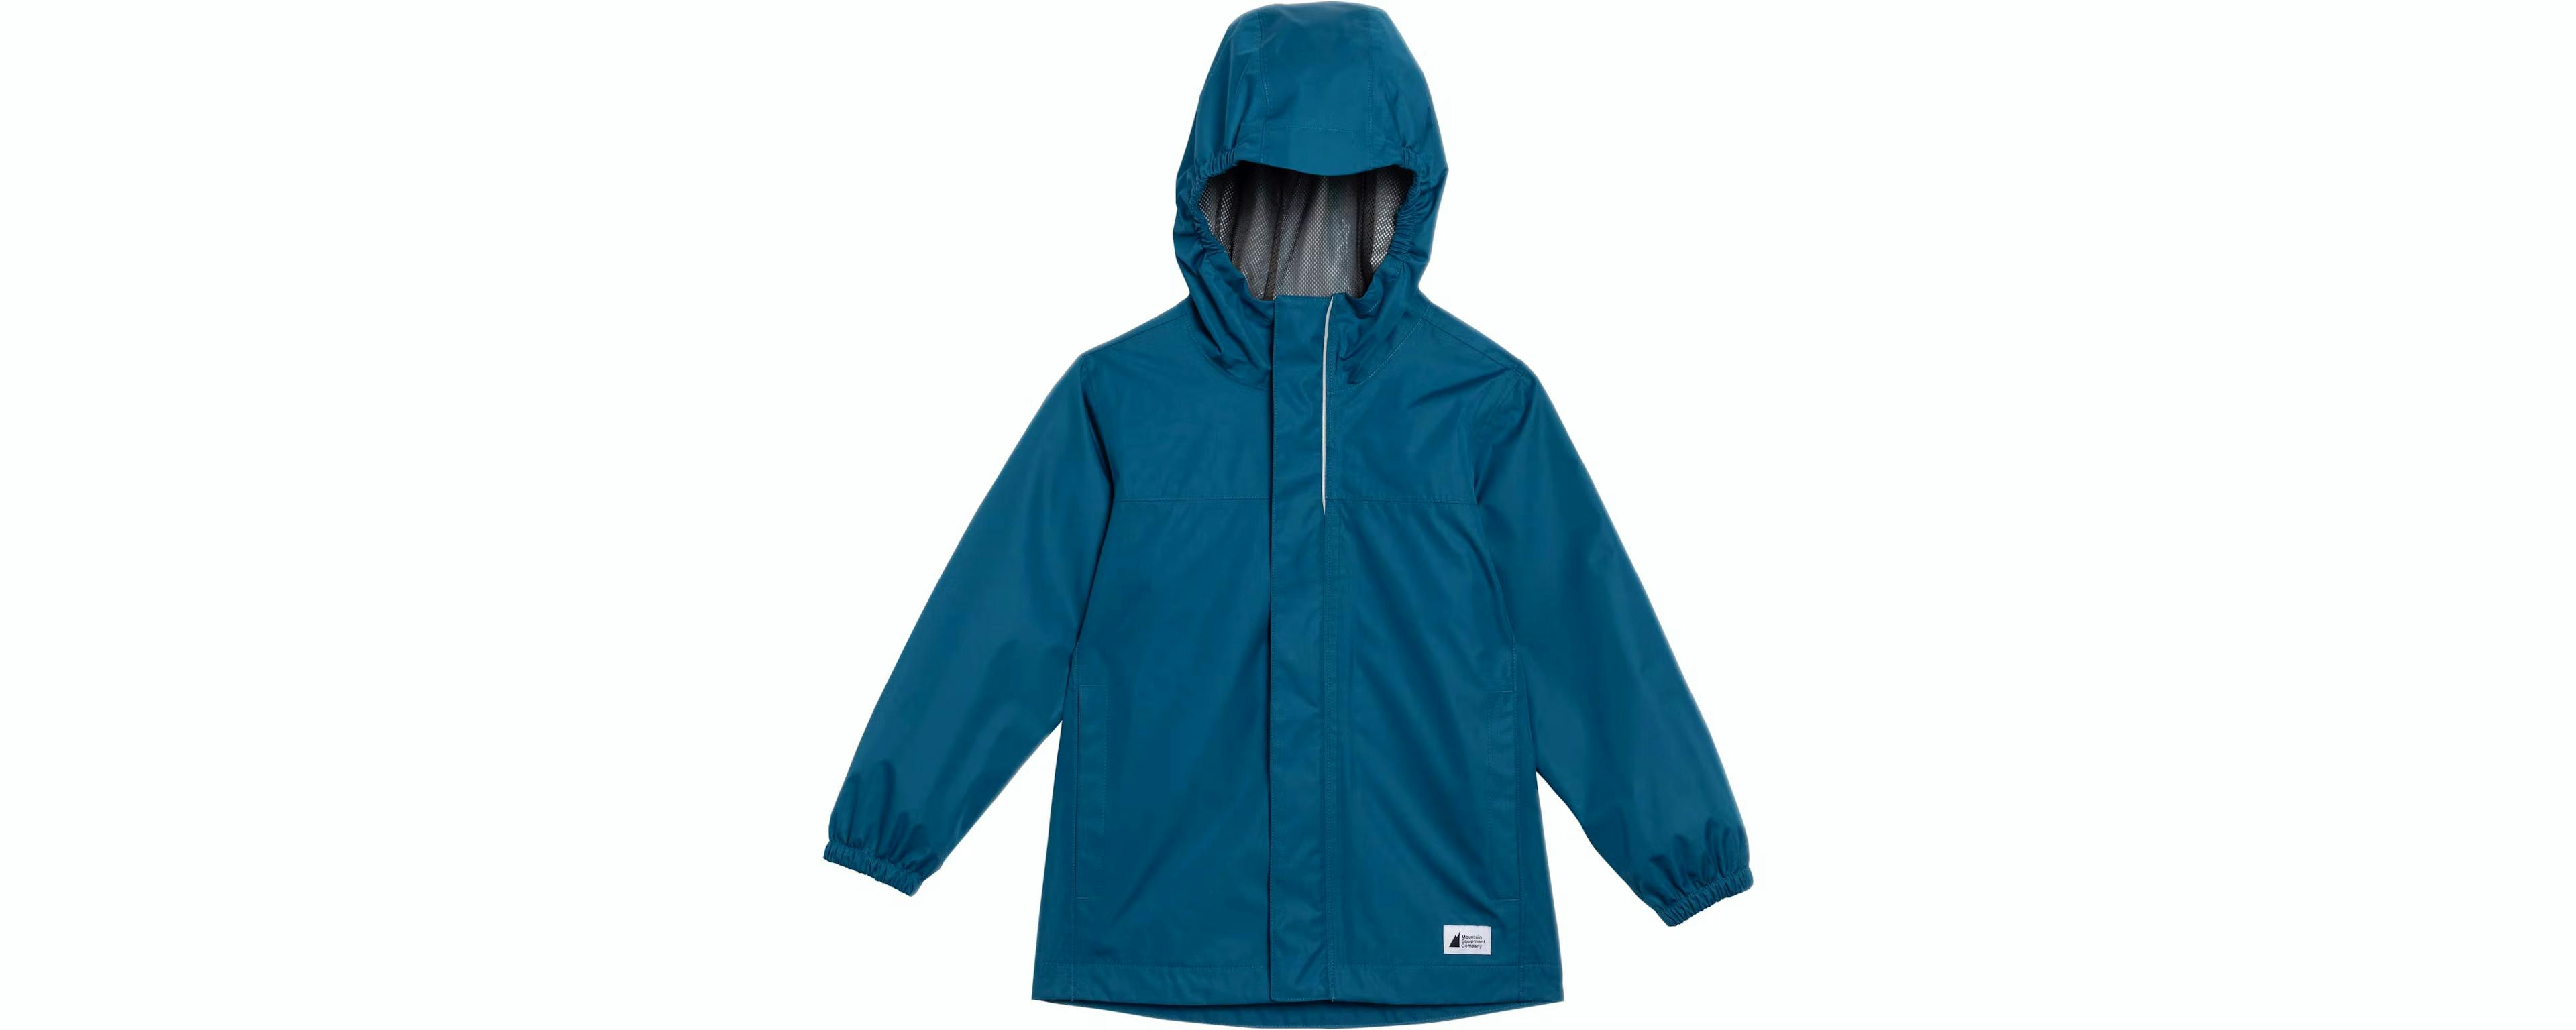 Medium blue rain jacket